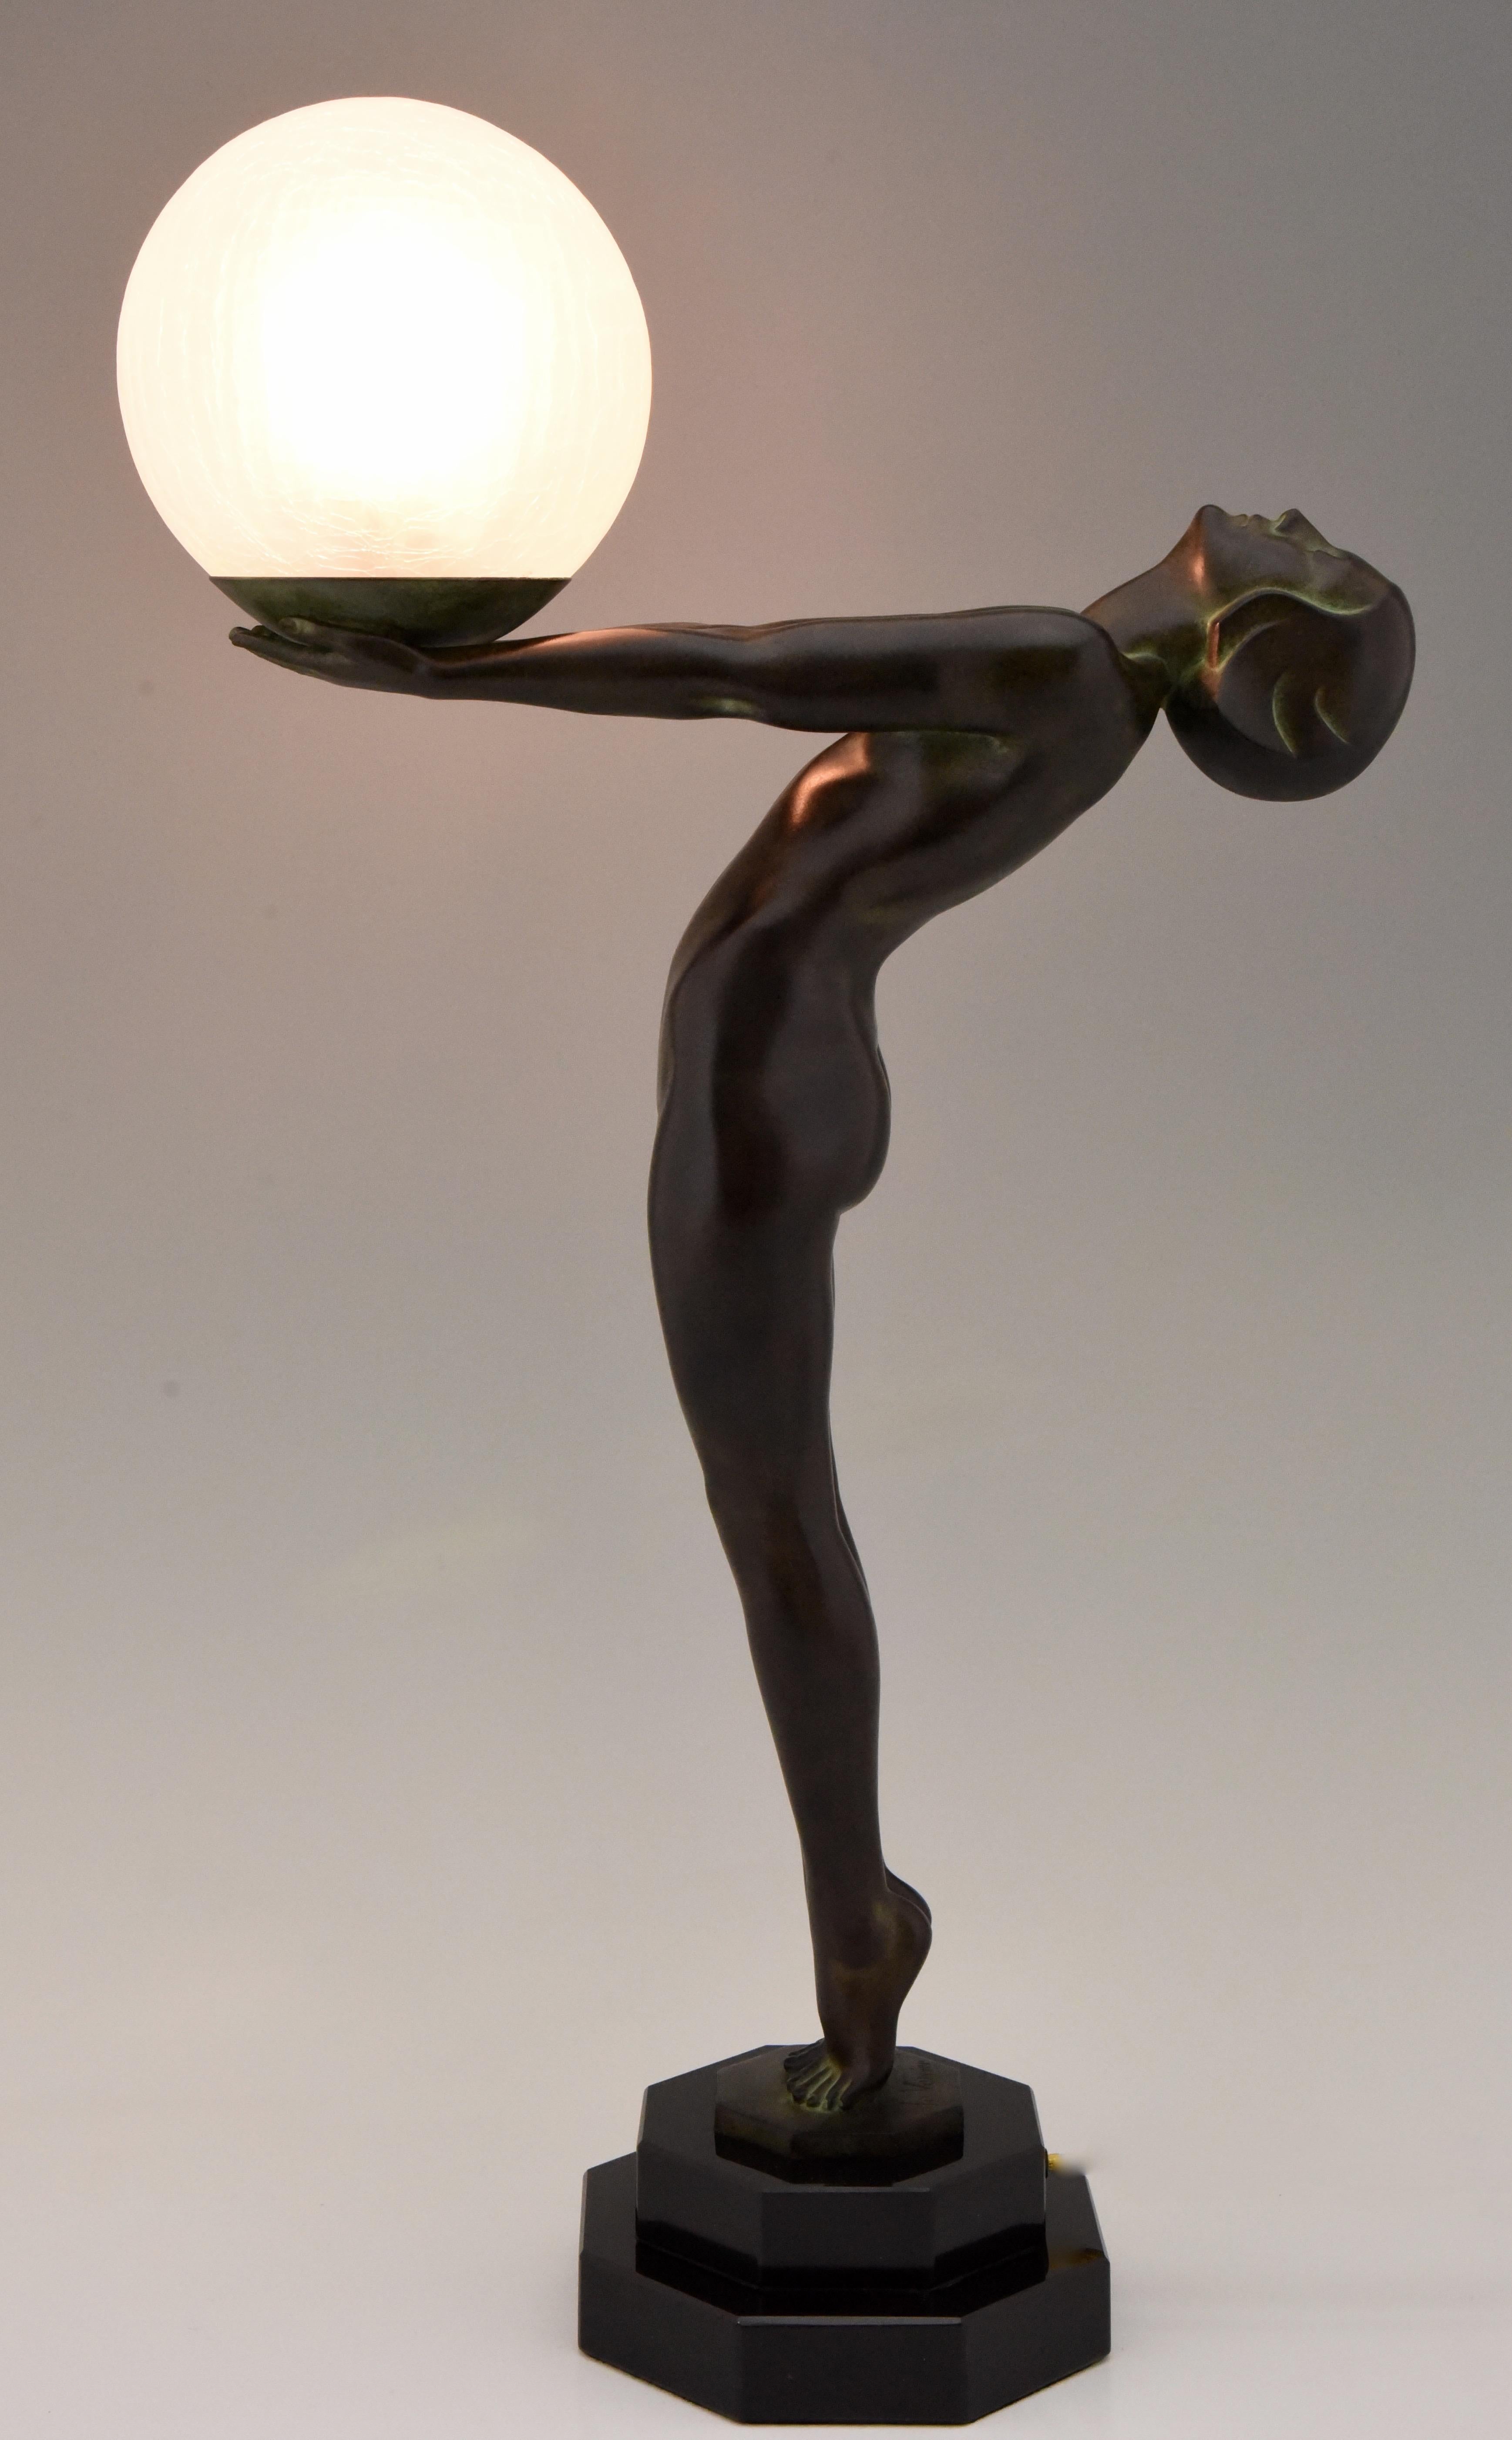 Impressionnante lampe de table figurative Art déco représentant un nu debout tenant un abat-jour en verre, CLarté, Lumina.
Dimensions : H. 65 cm ou 25.6 pouces.
Conçu par Max Le Verrier en France, 1928.
Original posthume contemporain coulé à la